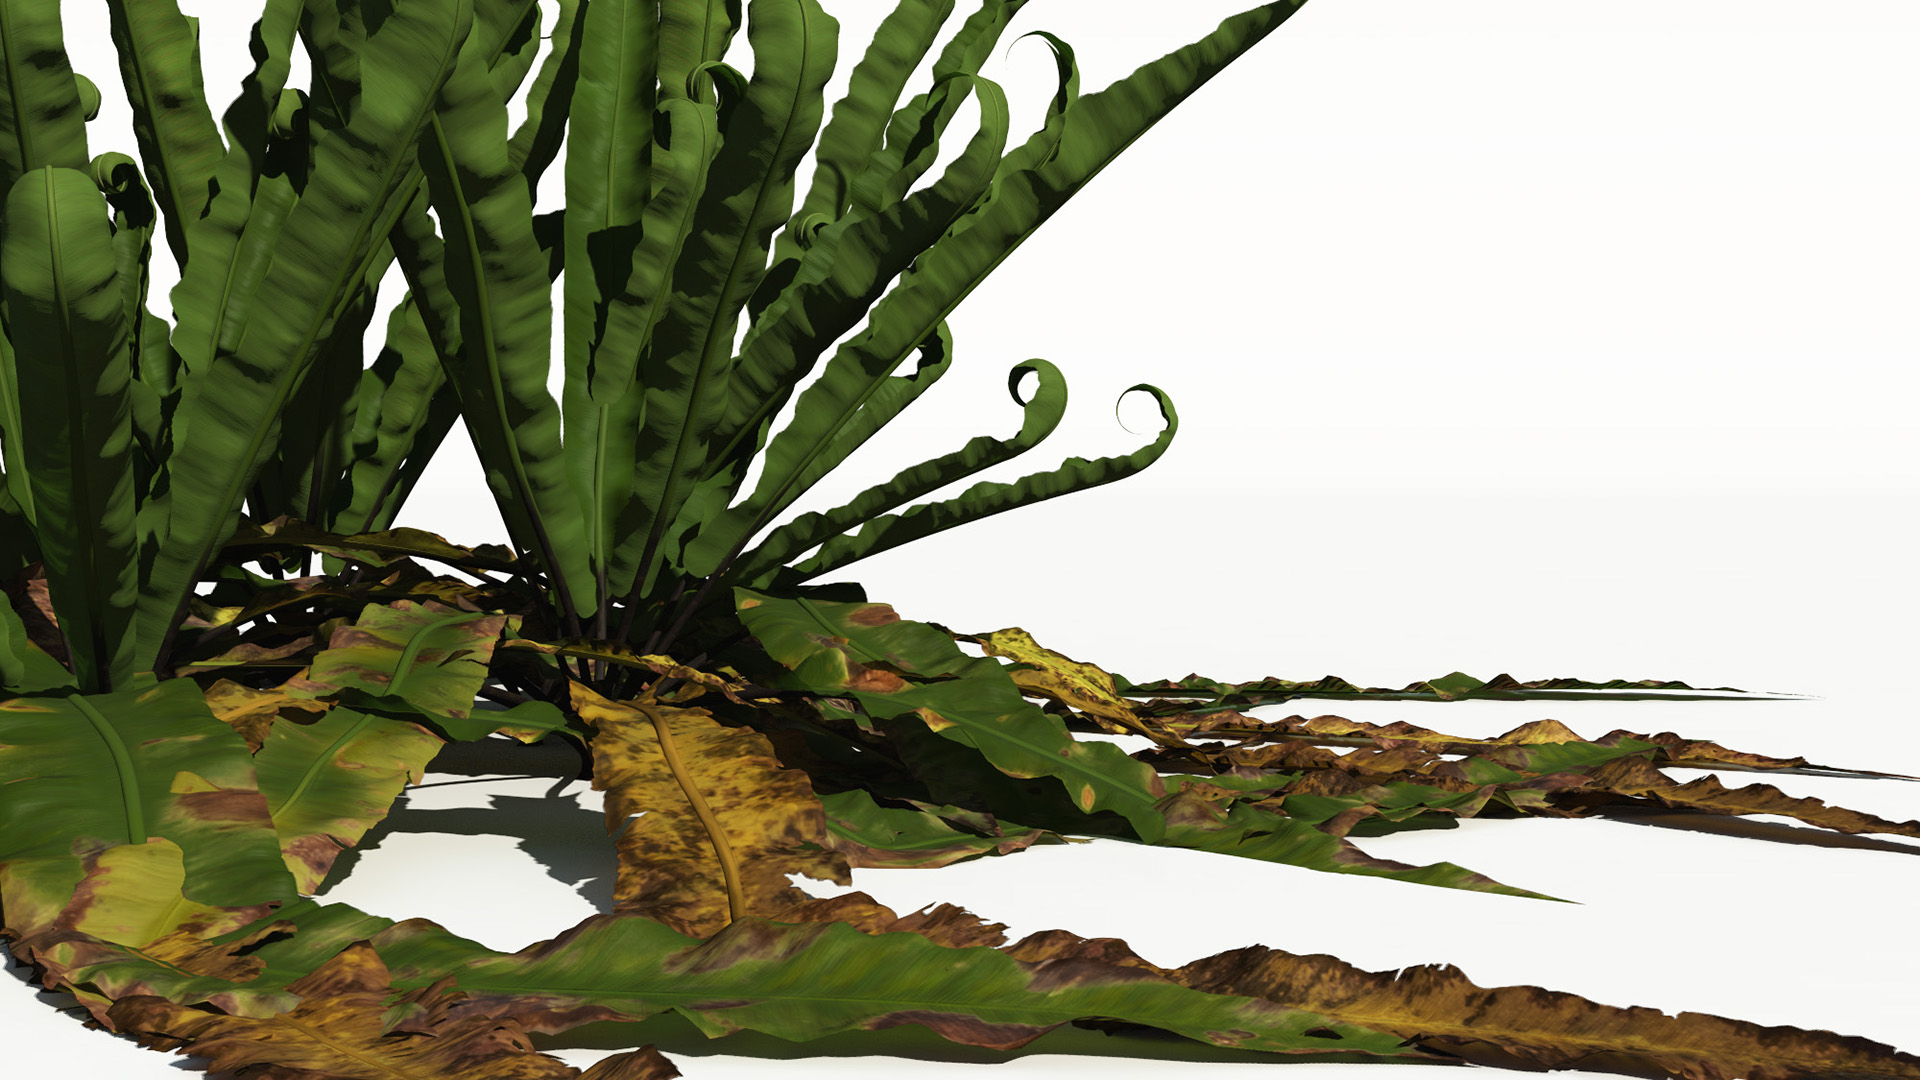 3D model of the Harts tongue fern Asplenium scolopendrium